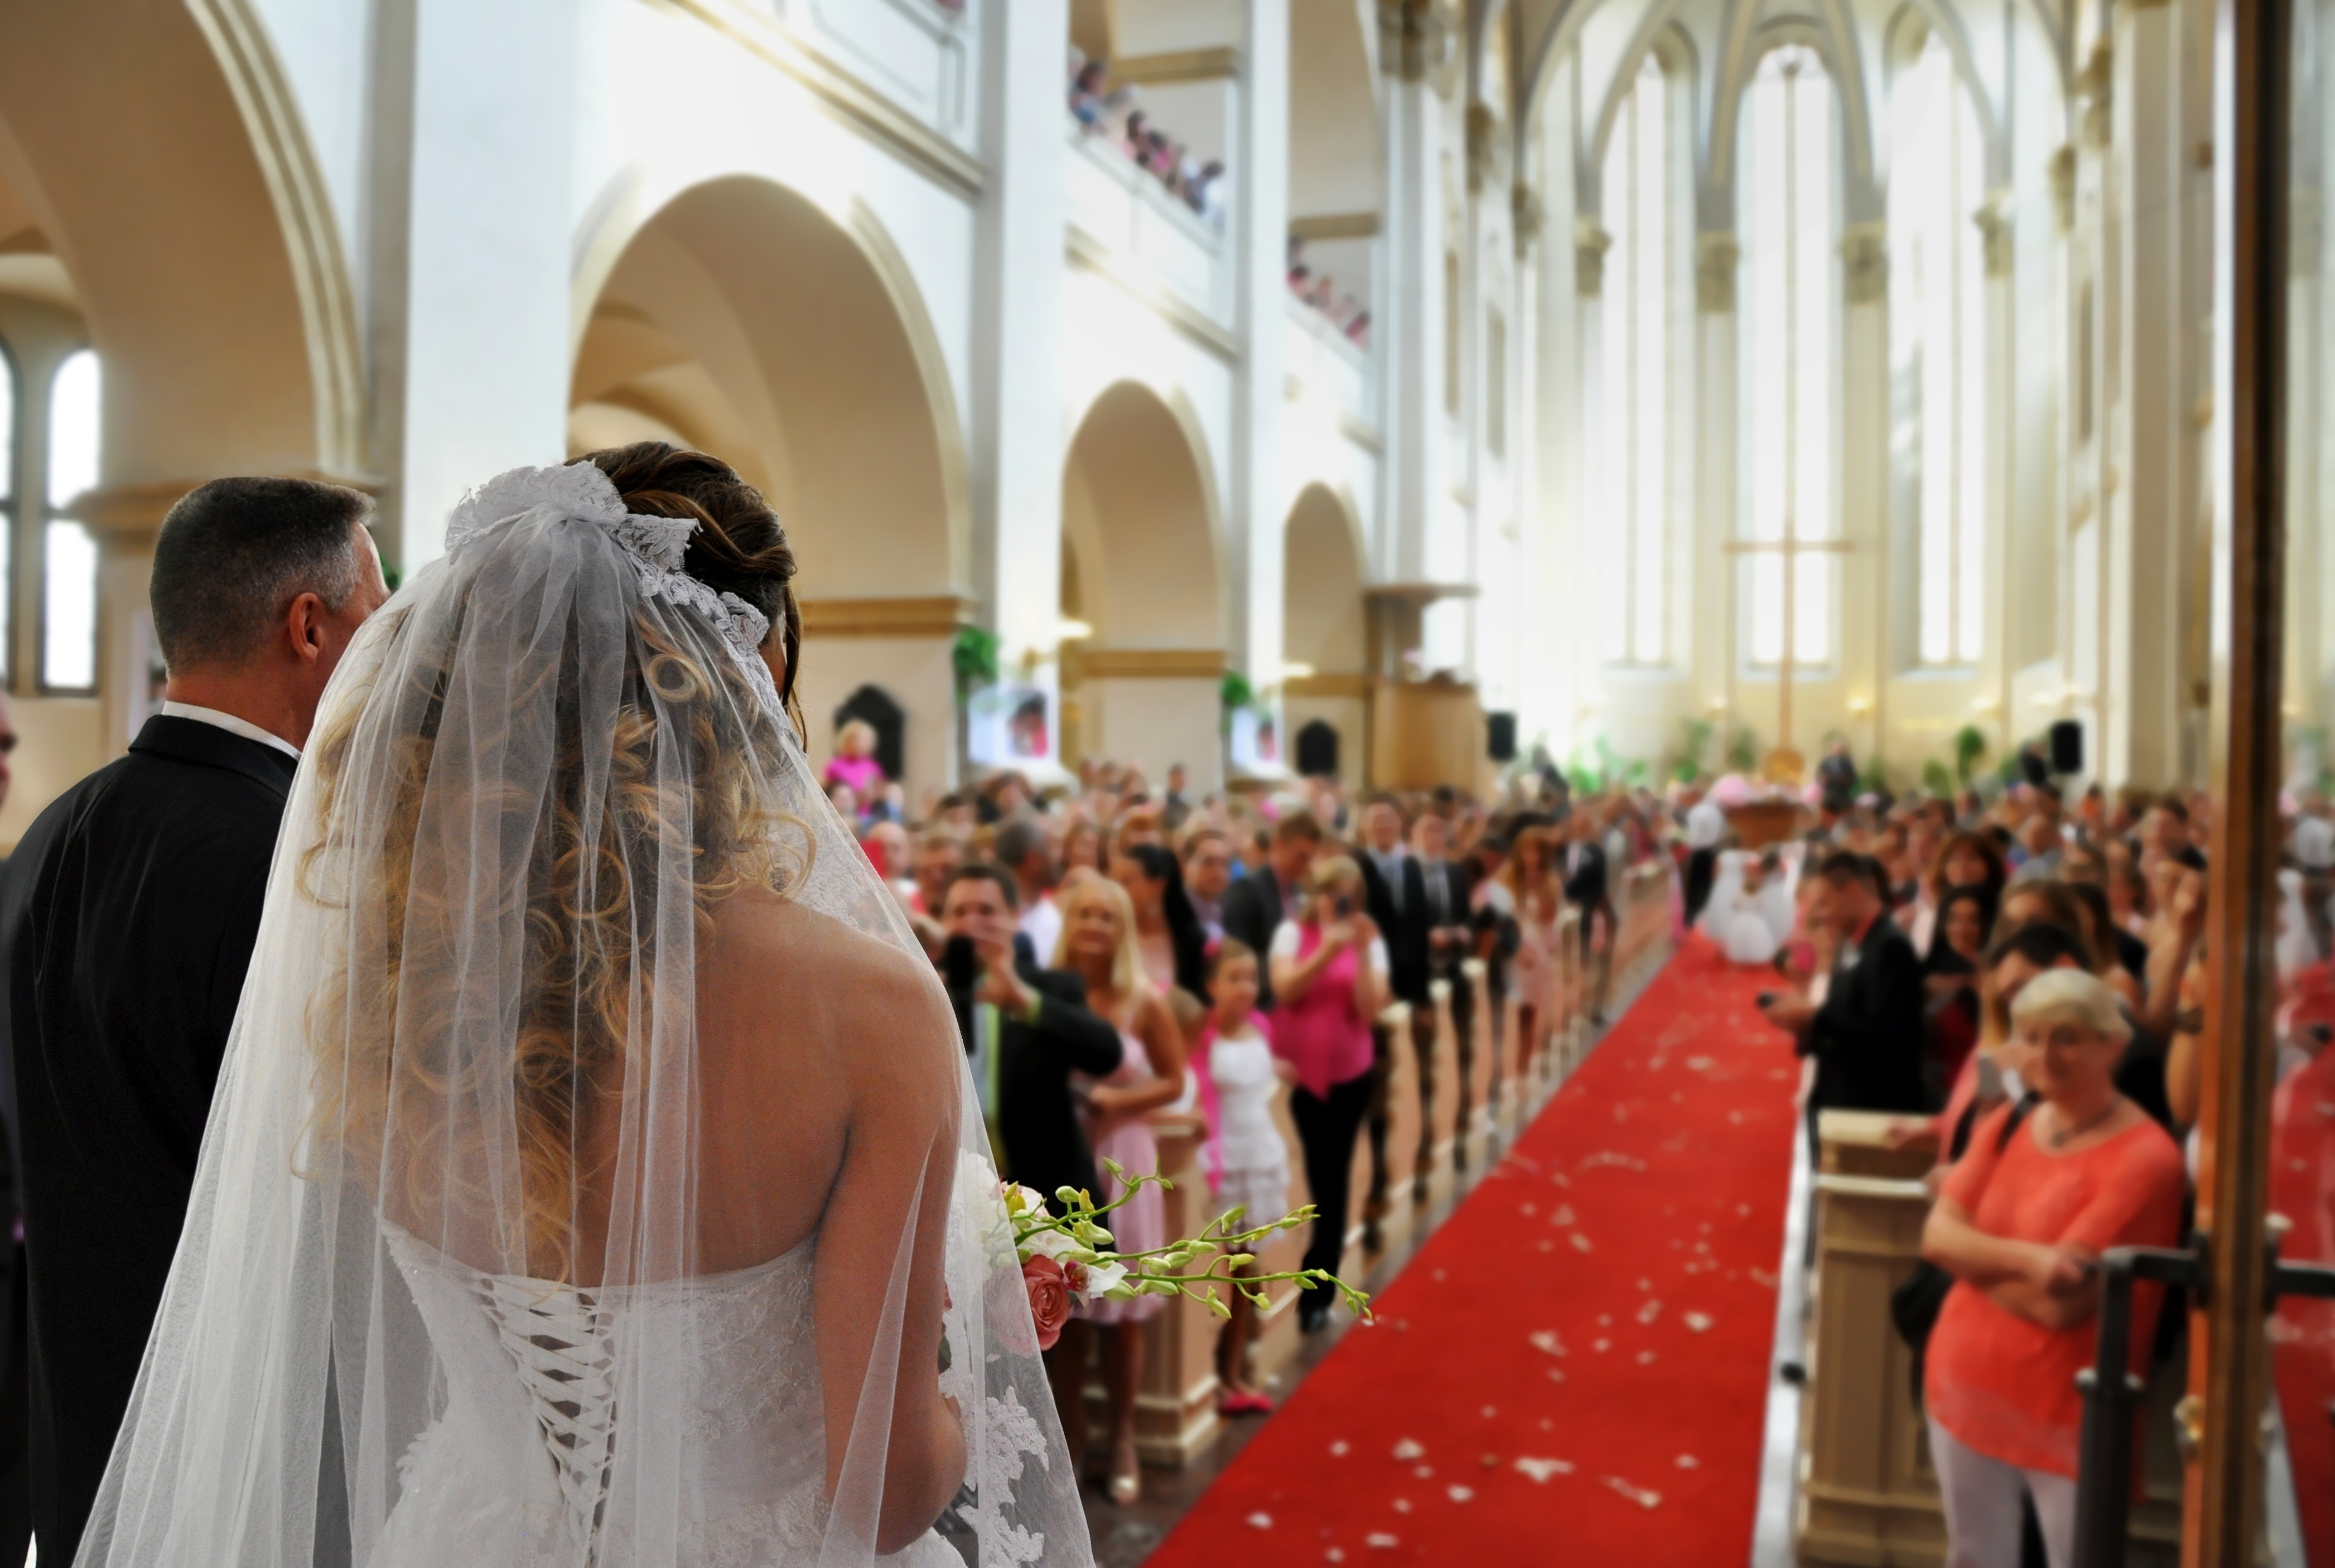 Beautiful wedding in big church | Source: Shutterstock